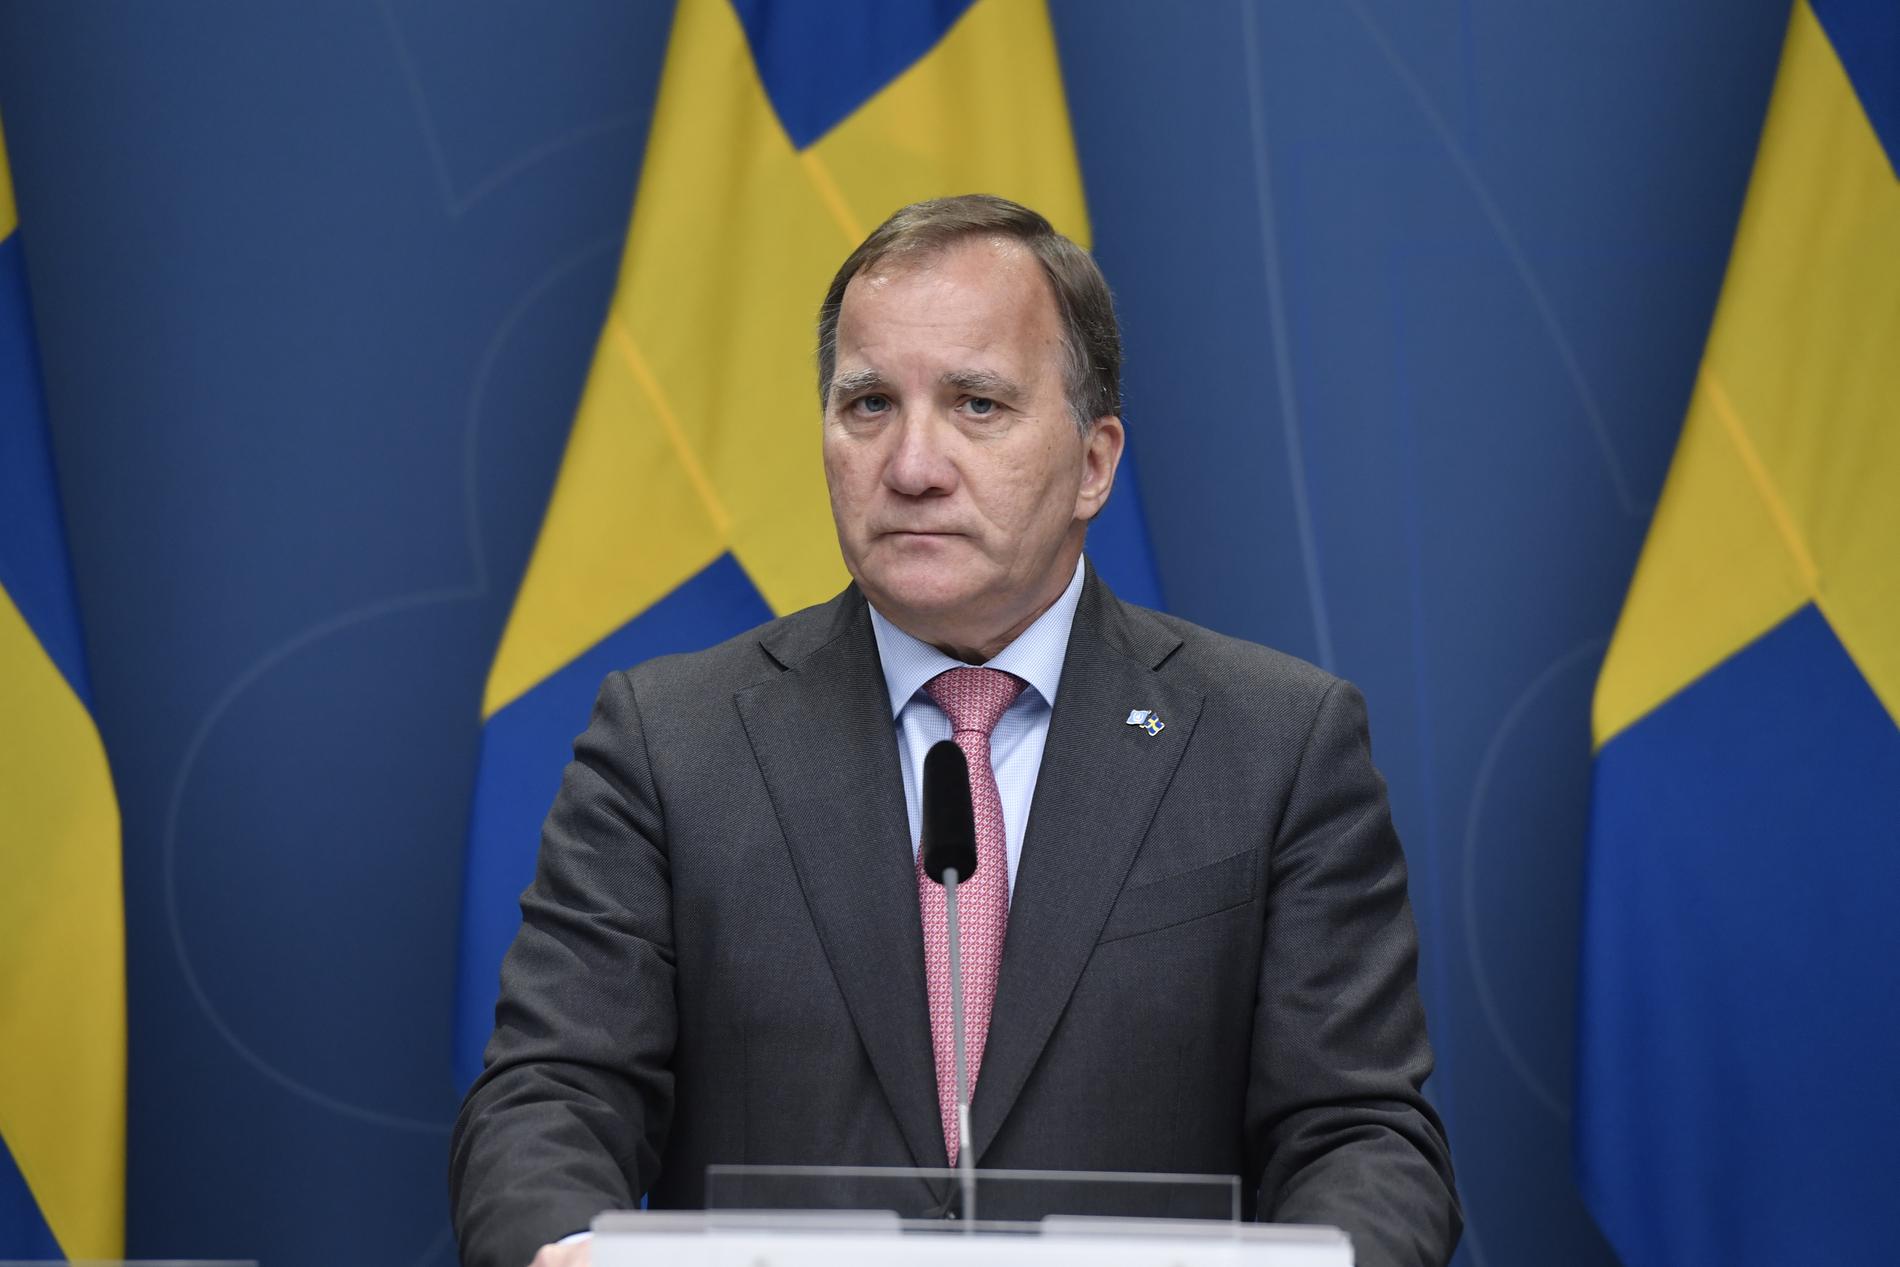 Statsminister Stefan Löfven (S) avgår - men ger inte upp.